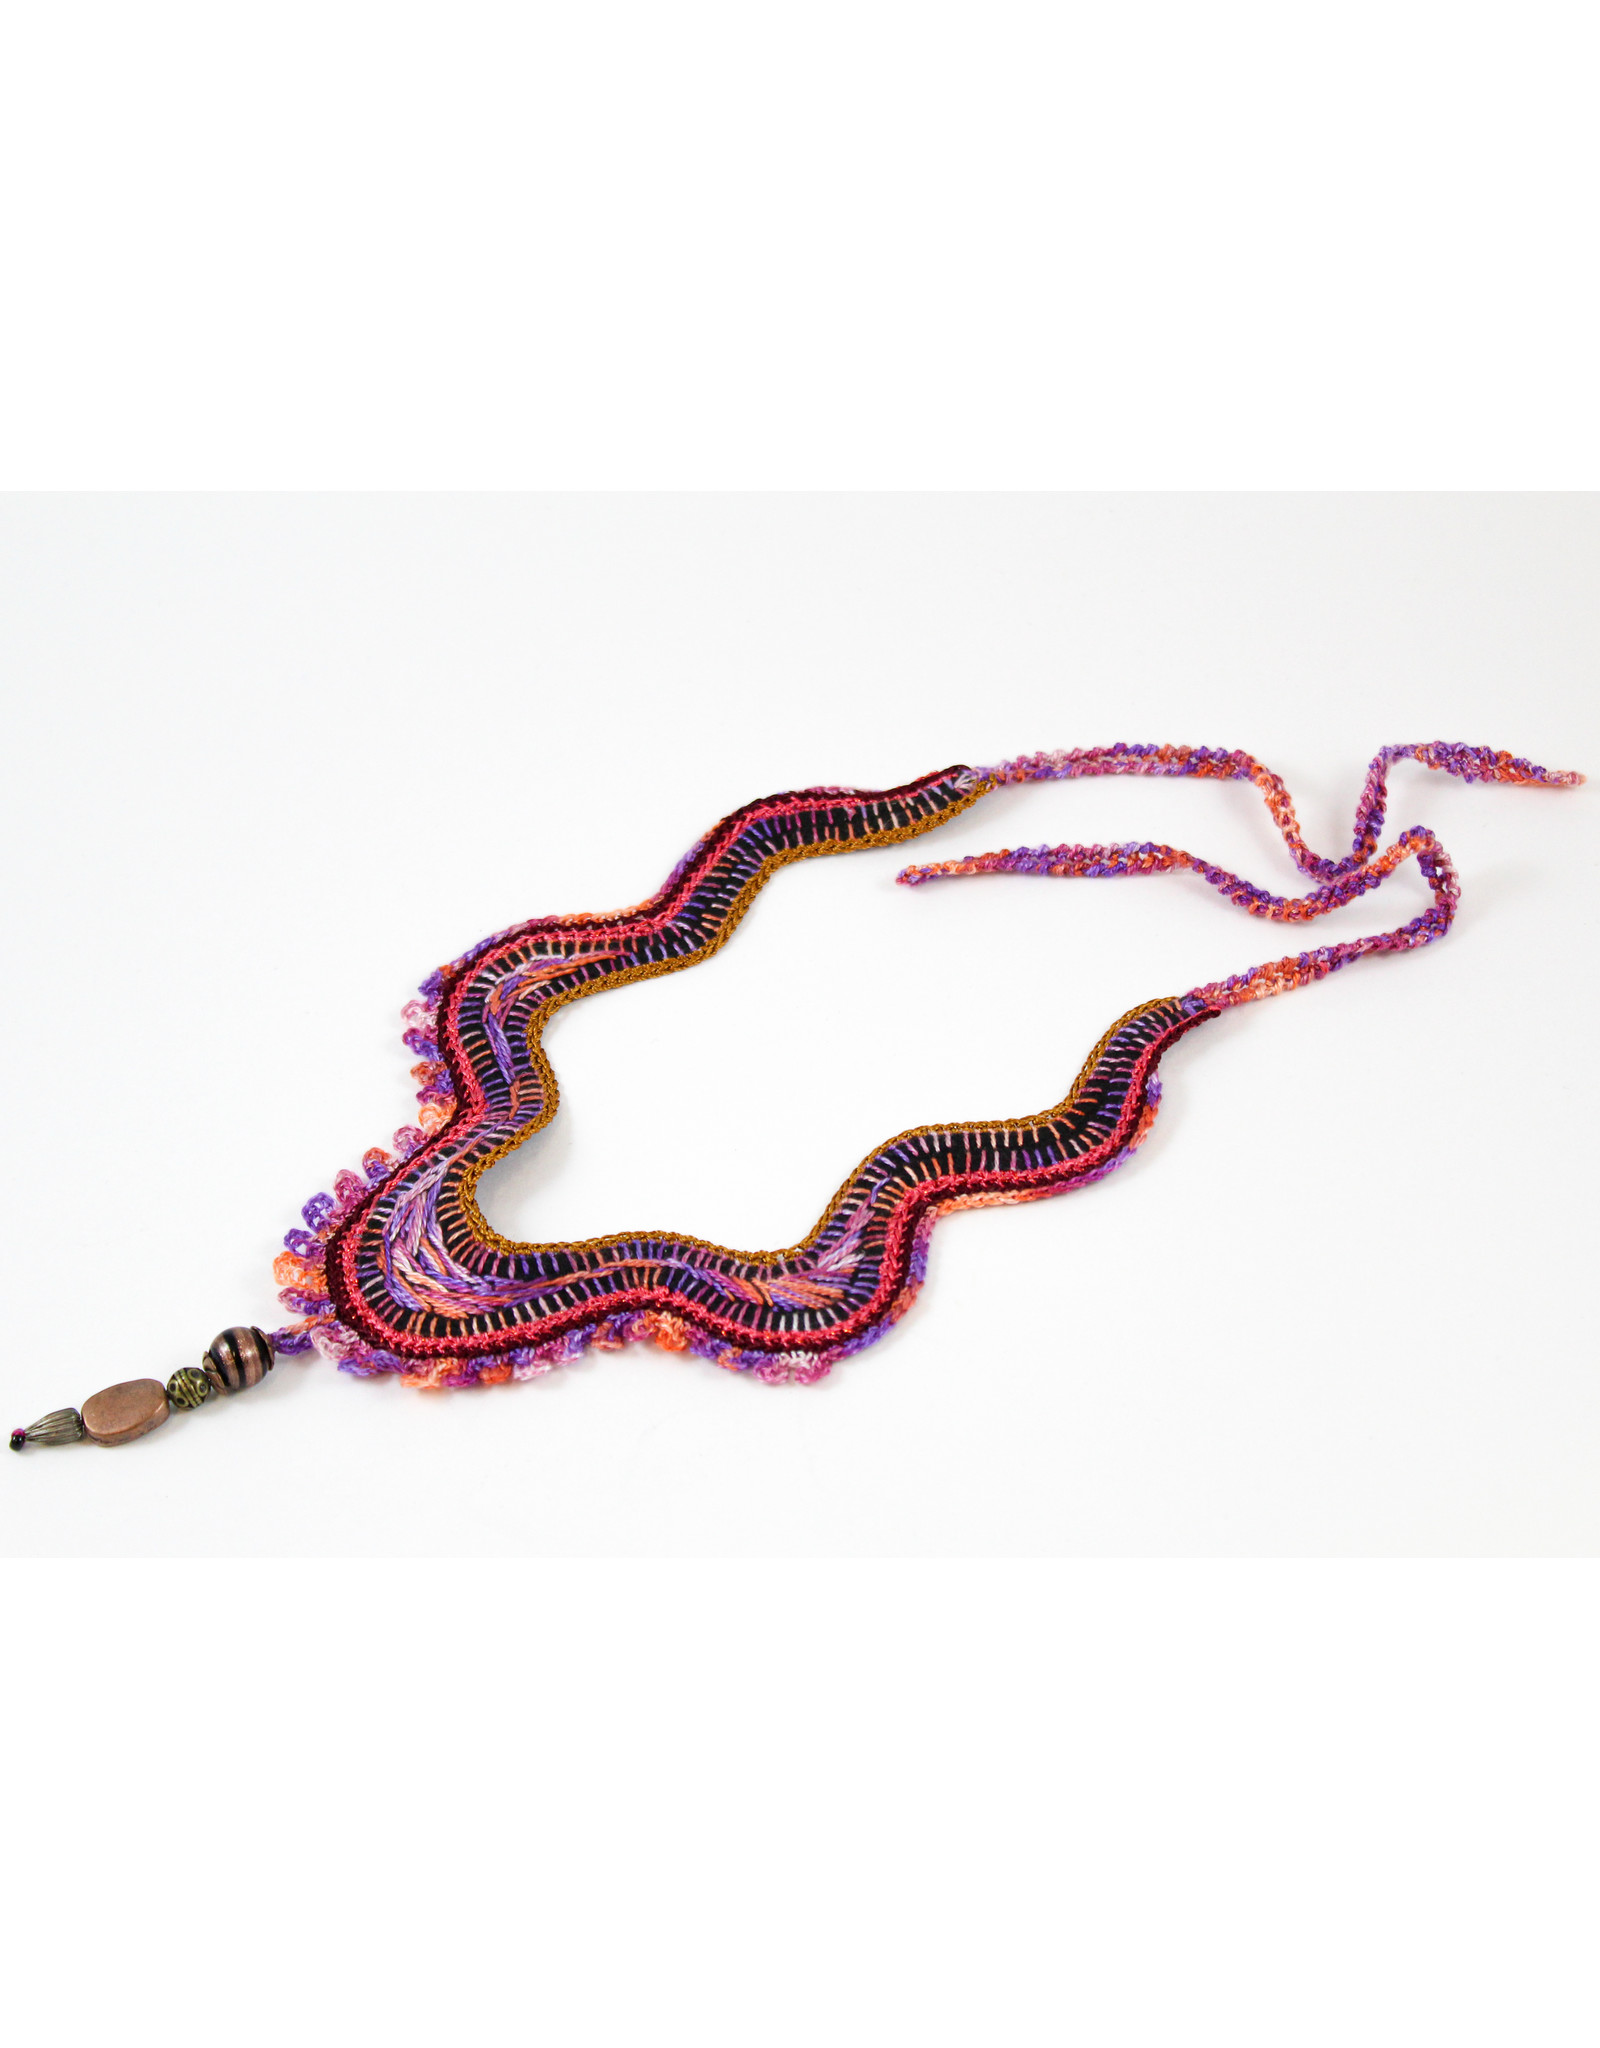 GUNDI Embroidered Necklace by Gundi